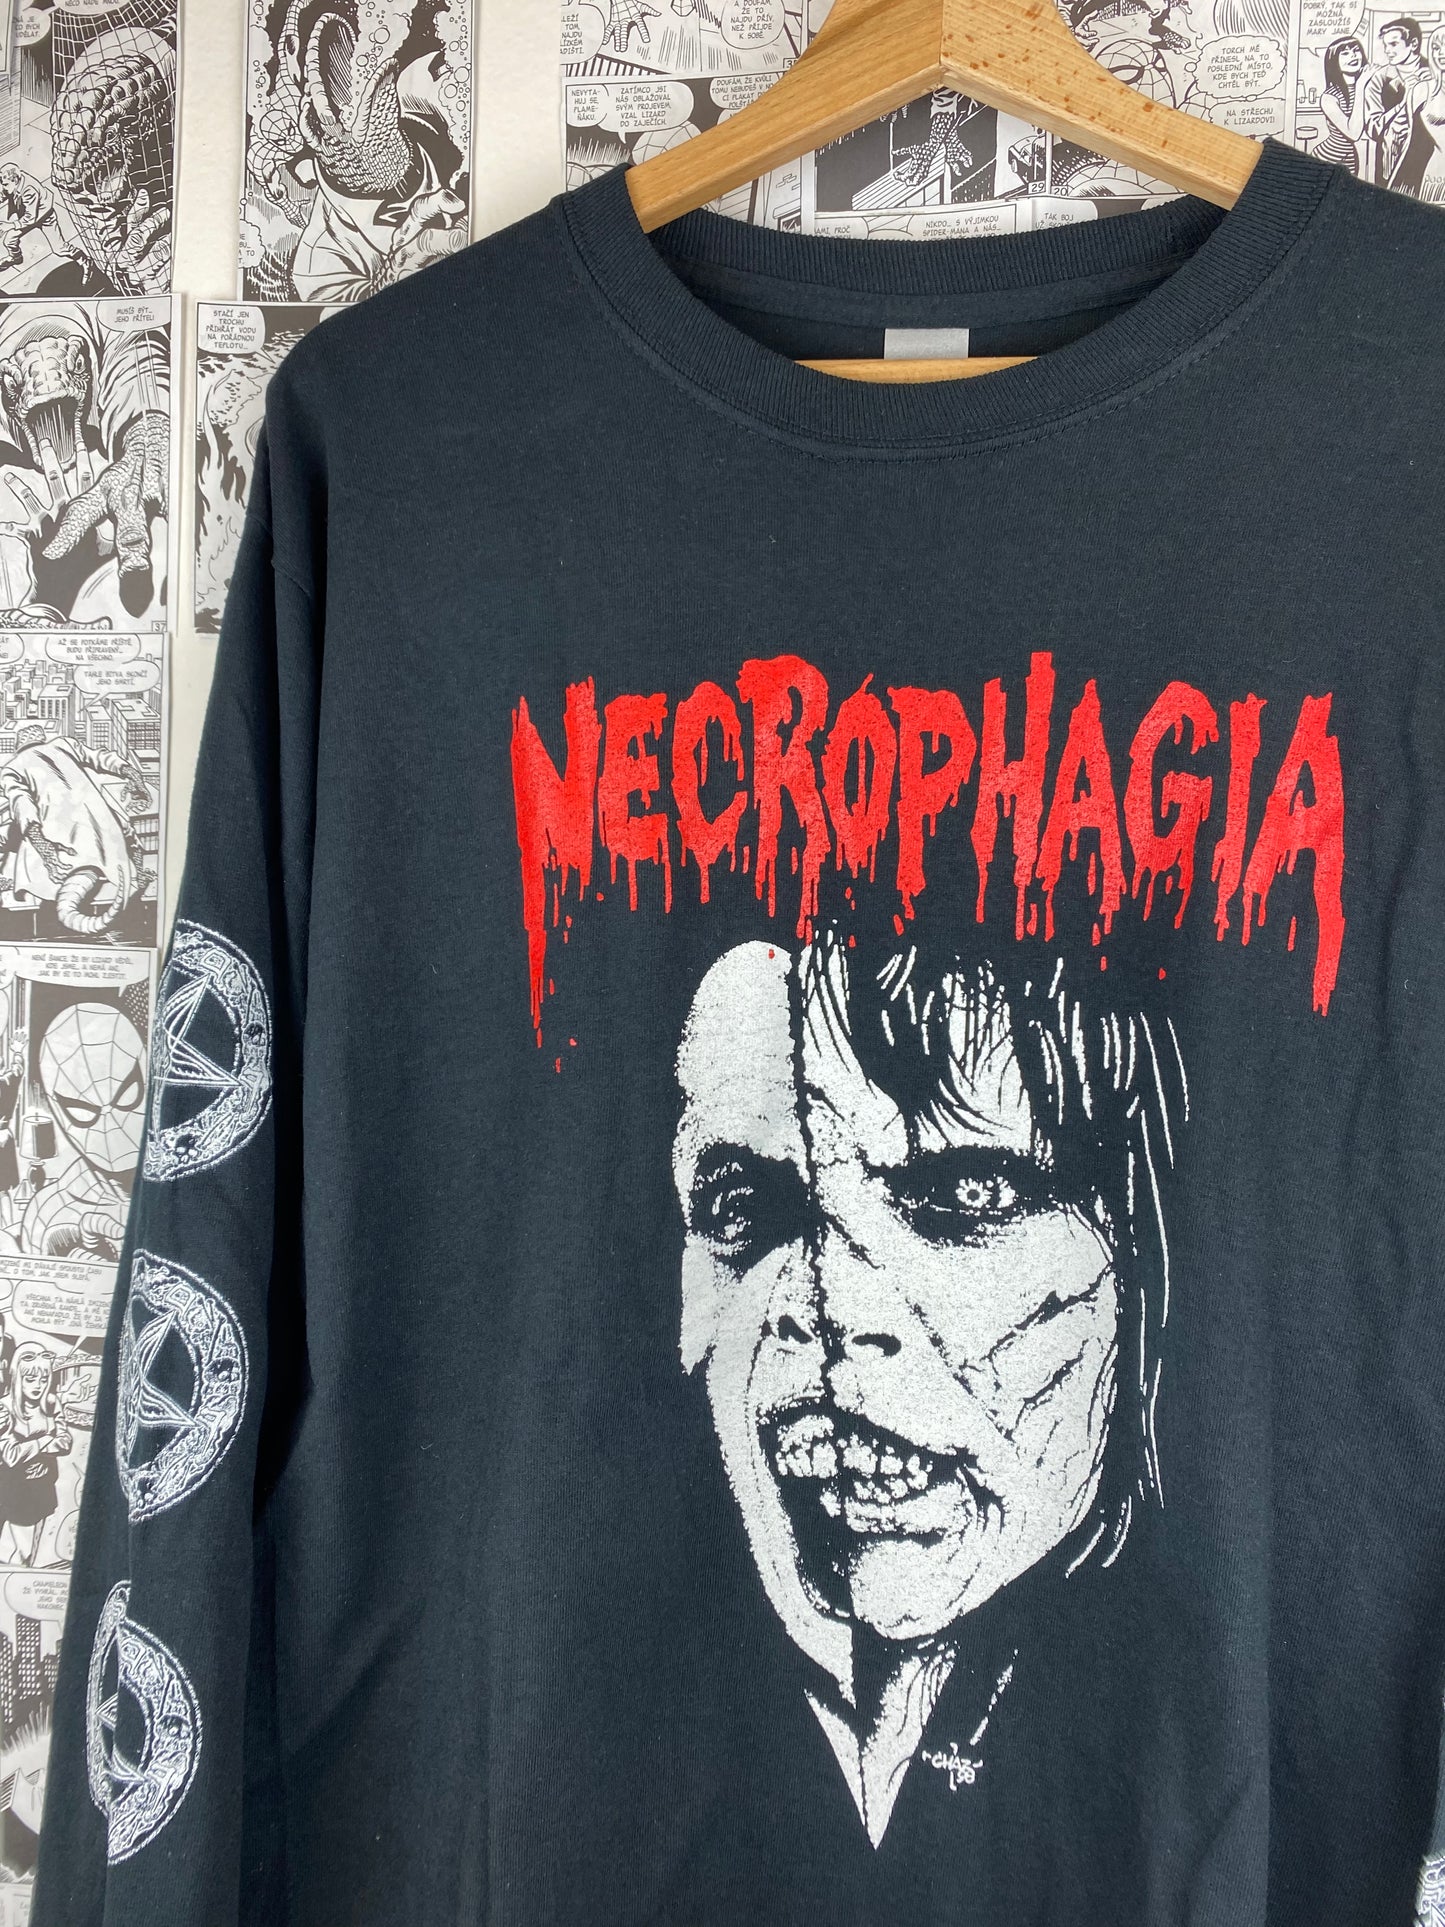 Vintage Necrophagia “Devil’s seed” 00s t-shirt - size M